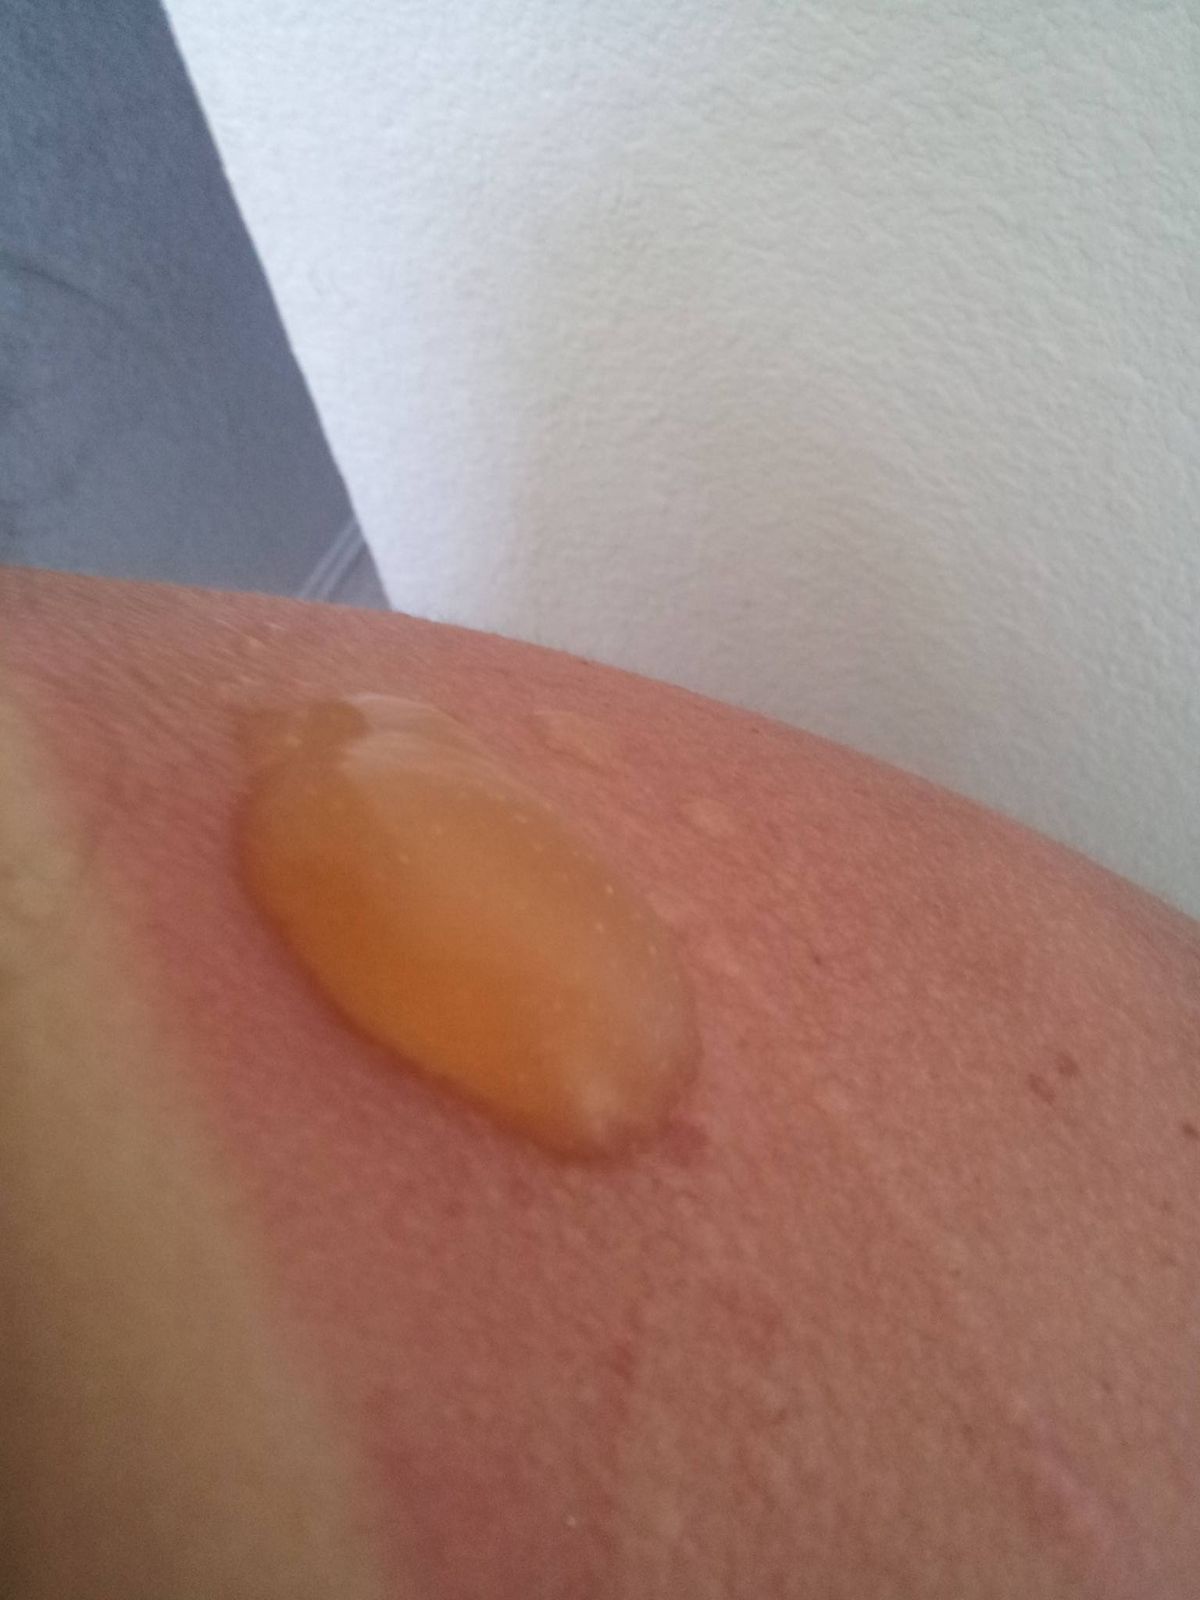 Oparzenia słoneczne - jak ratować skórę?